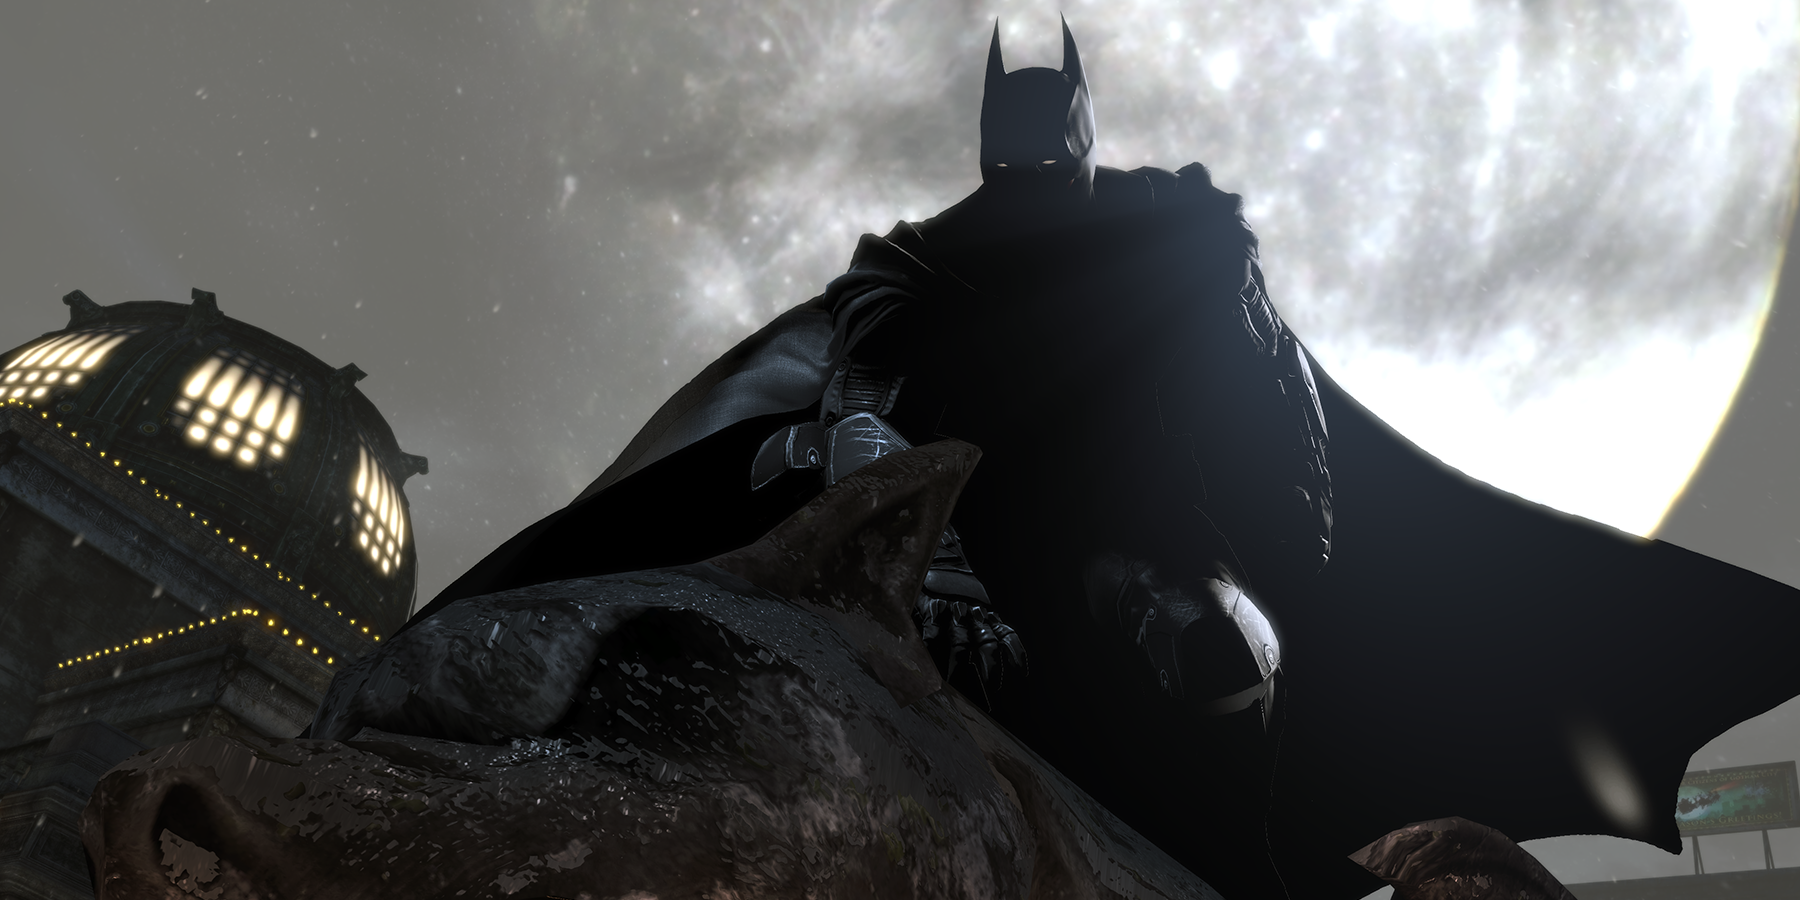 Batman perched on a gargoyle in Batman: Arkham Origins (2013)